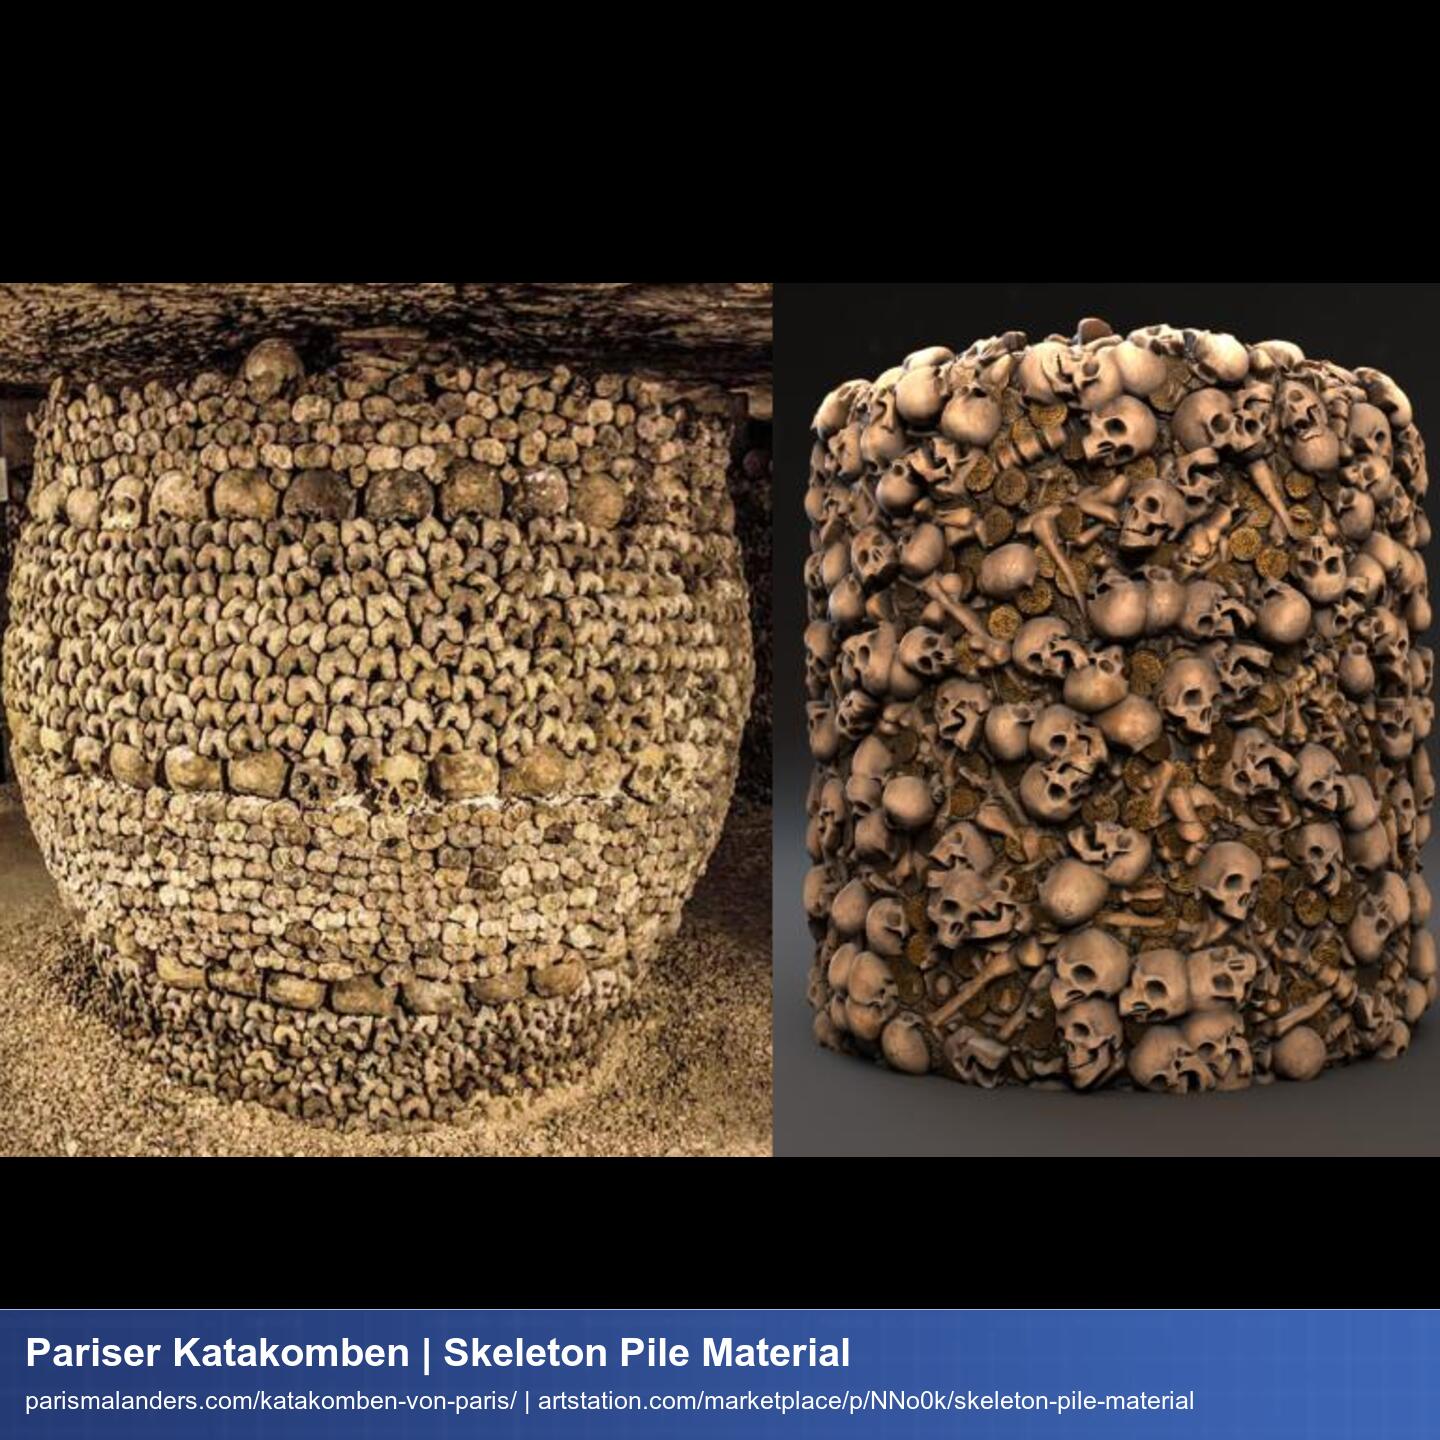 Das Foto der Knochensäule aus den Katakomben gegenübergestellt einem cylinder aus Substance Designer auf dem ein Knochen-Material dargestellt ist.